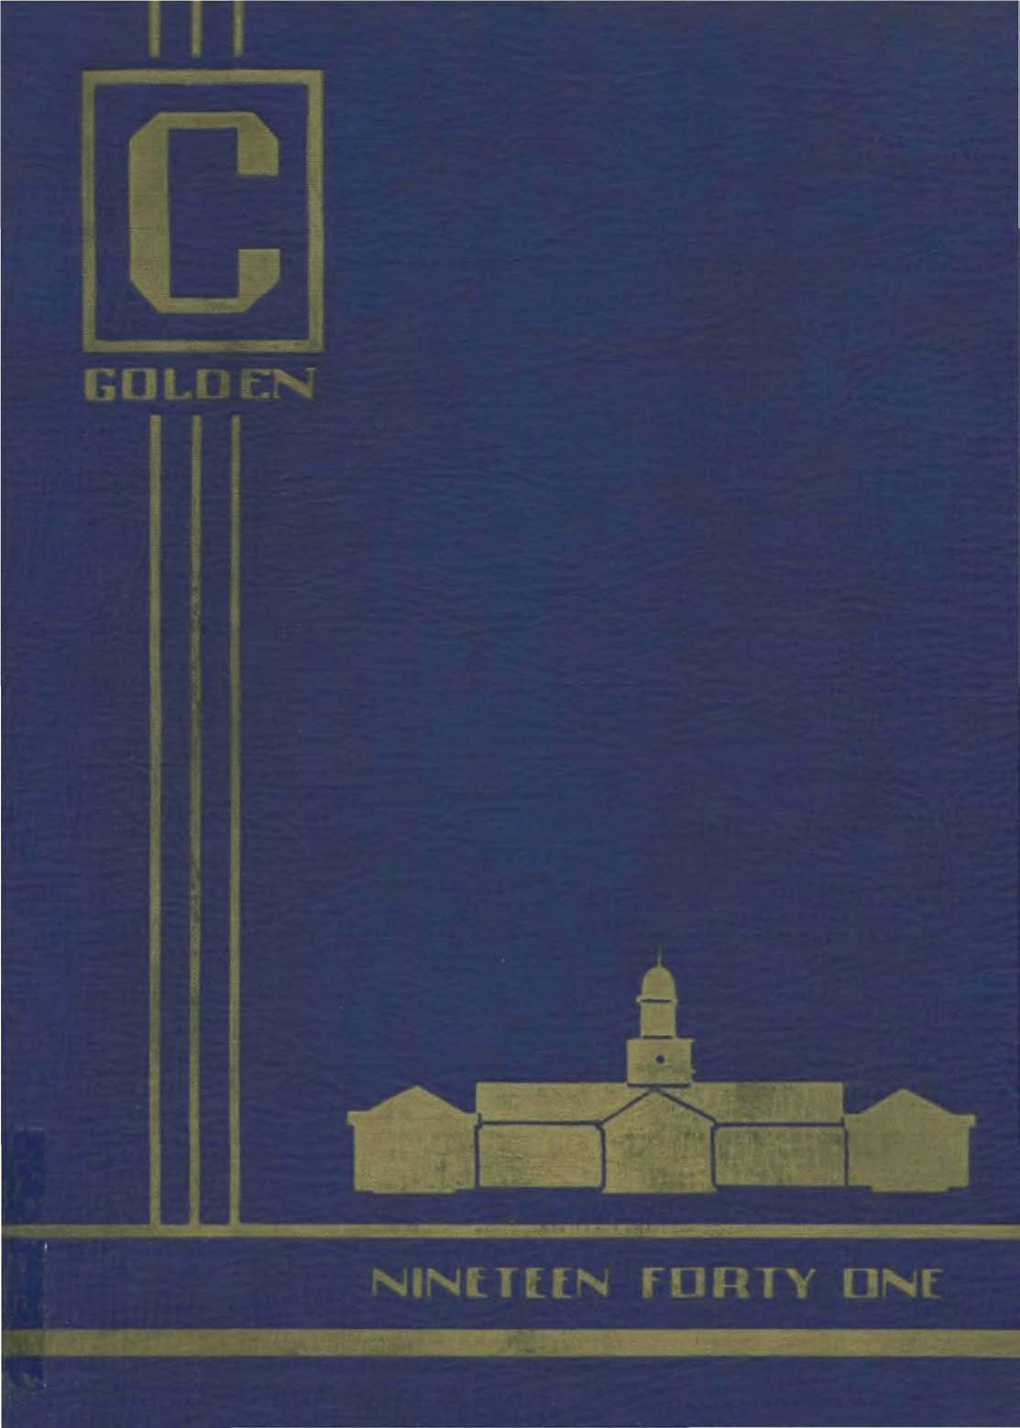 1941 Golden "C"